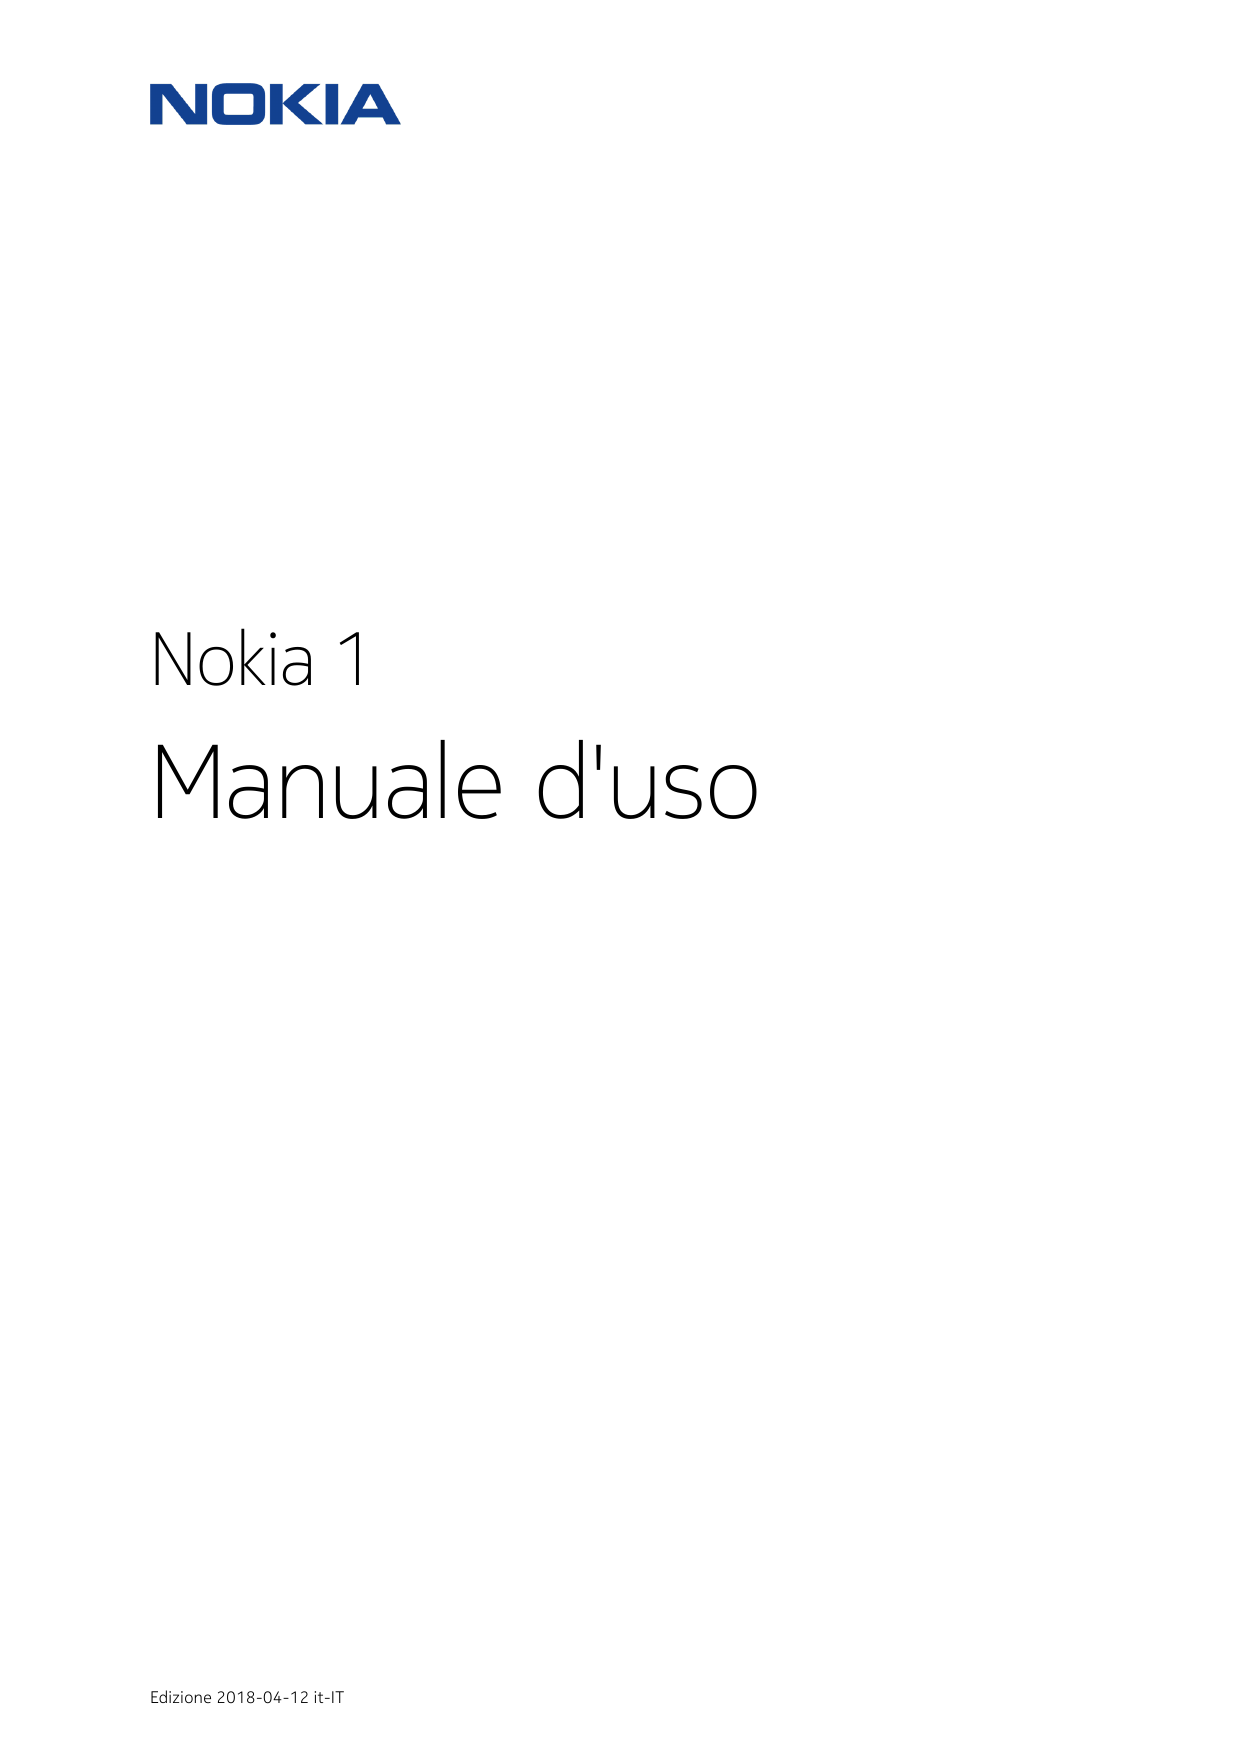 Nokia 1Manuale d'usoEdizione 2018-04-12 it-IT